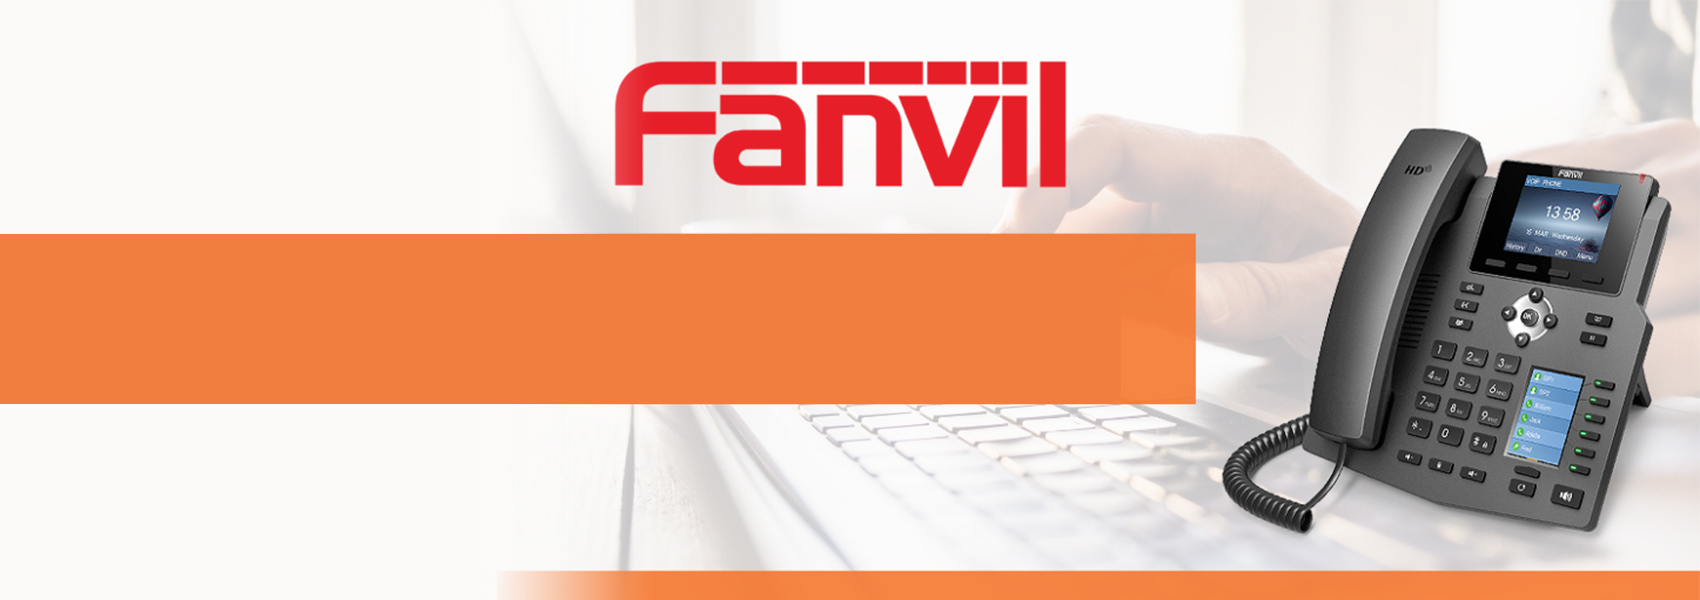 Fanvil - X4G